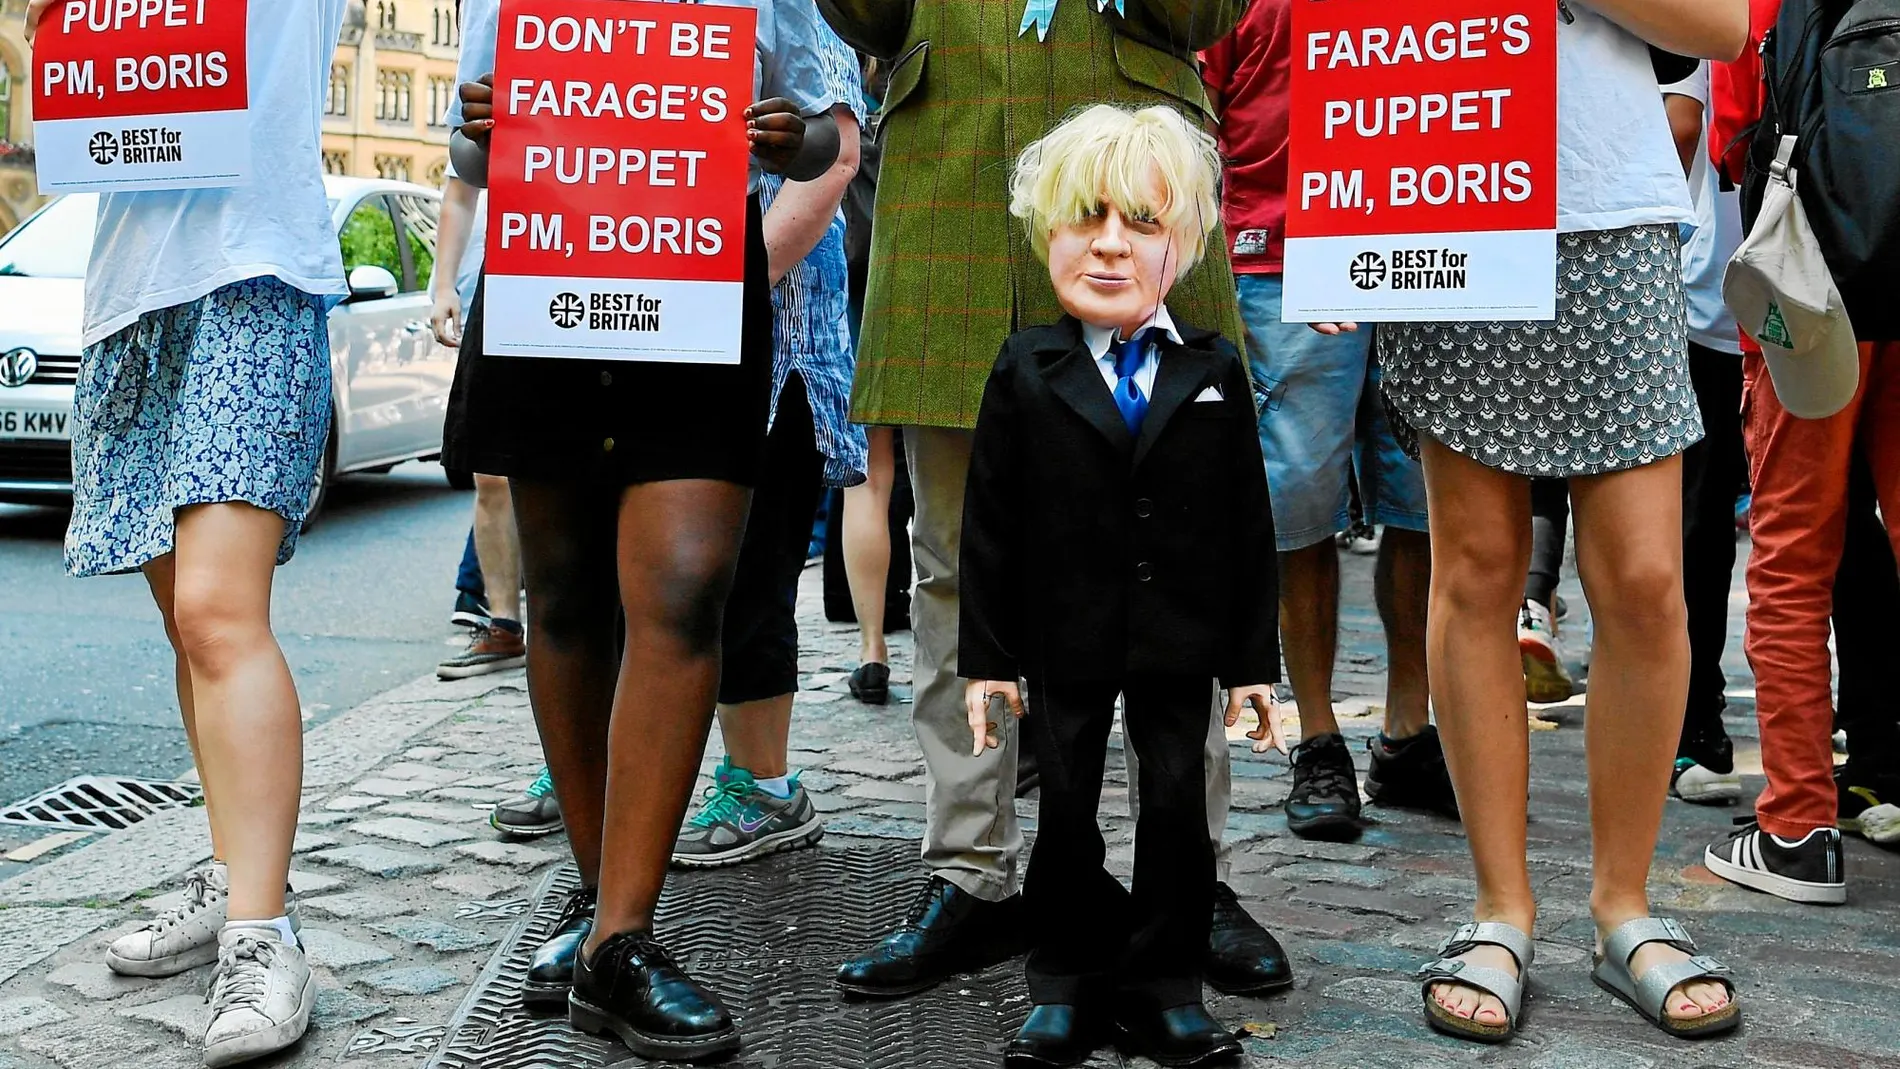 Manifestantes contrarios a Boris Johnson protestan ayer en Londres tras anunciarse su victoria en las primarias